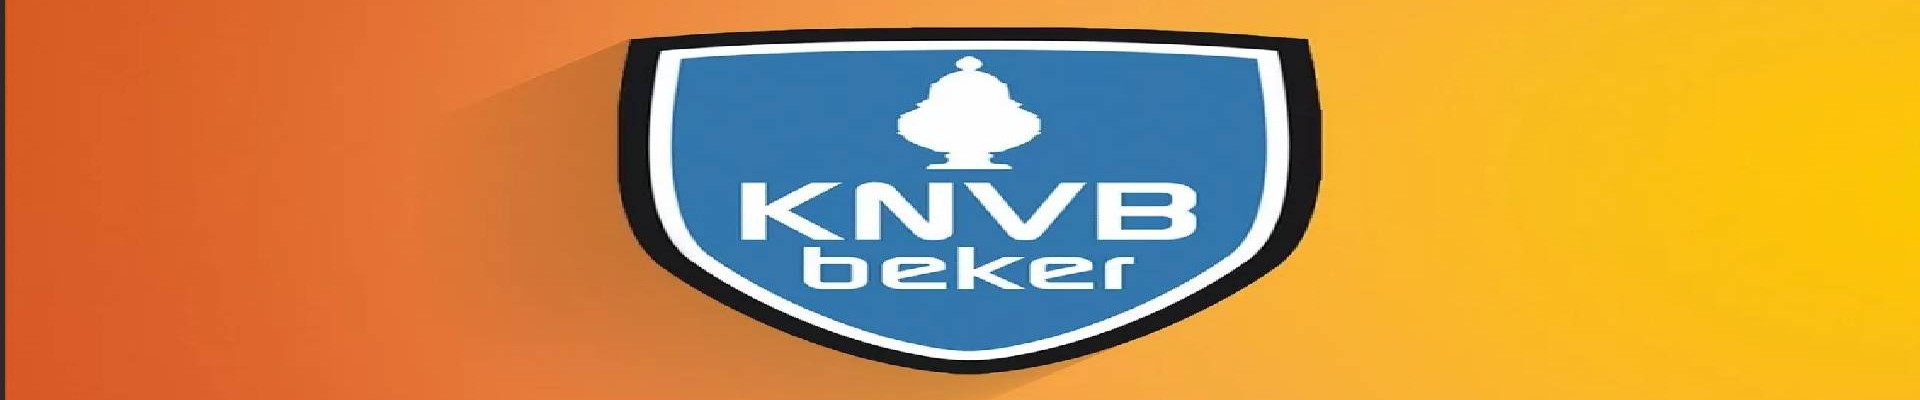 Hollanda KNVB Beker Maç Biletleri